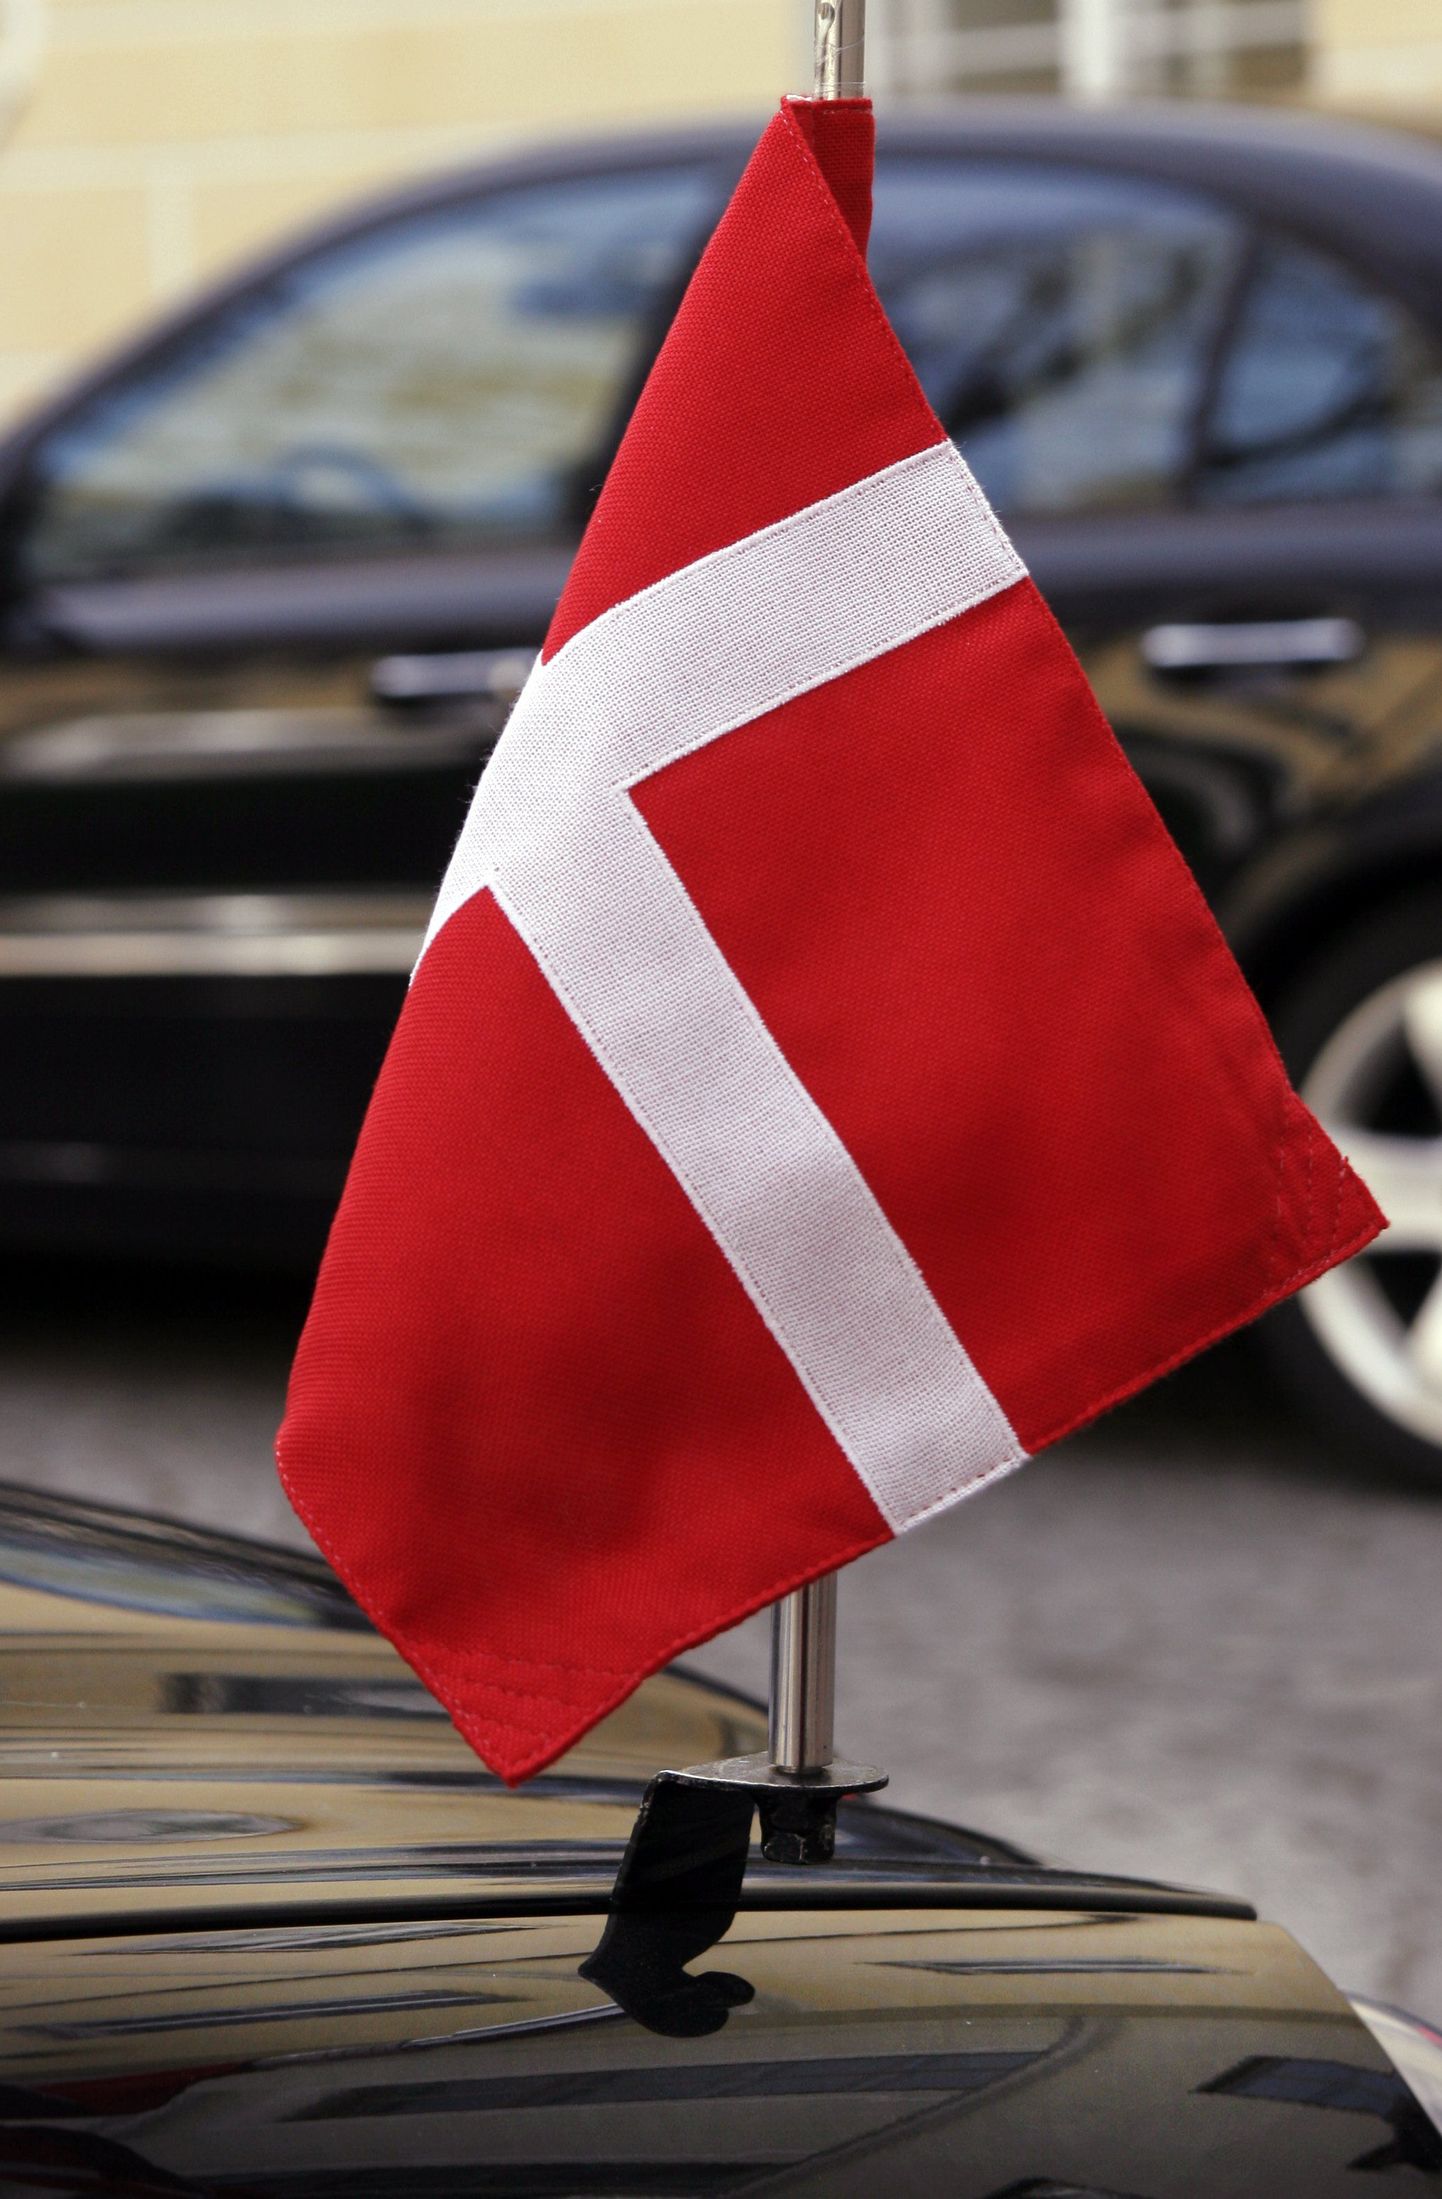 Taani lipp.